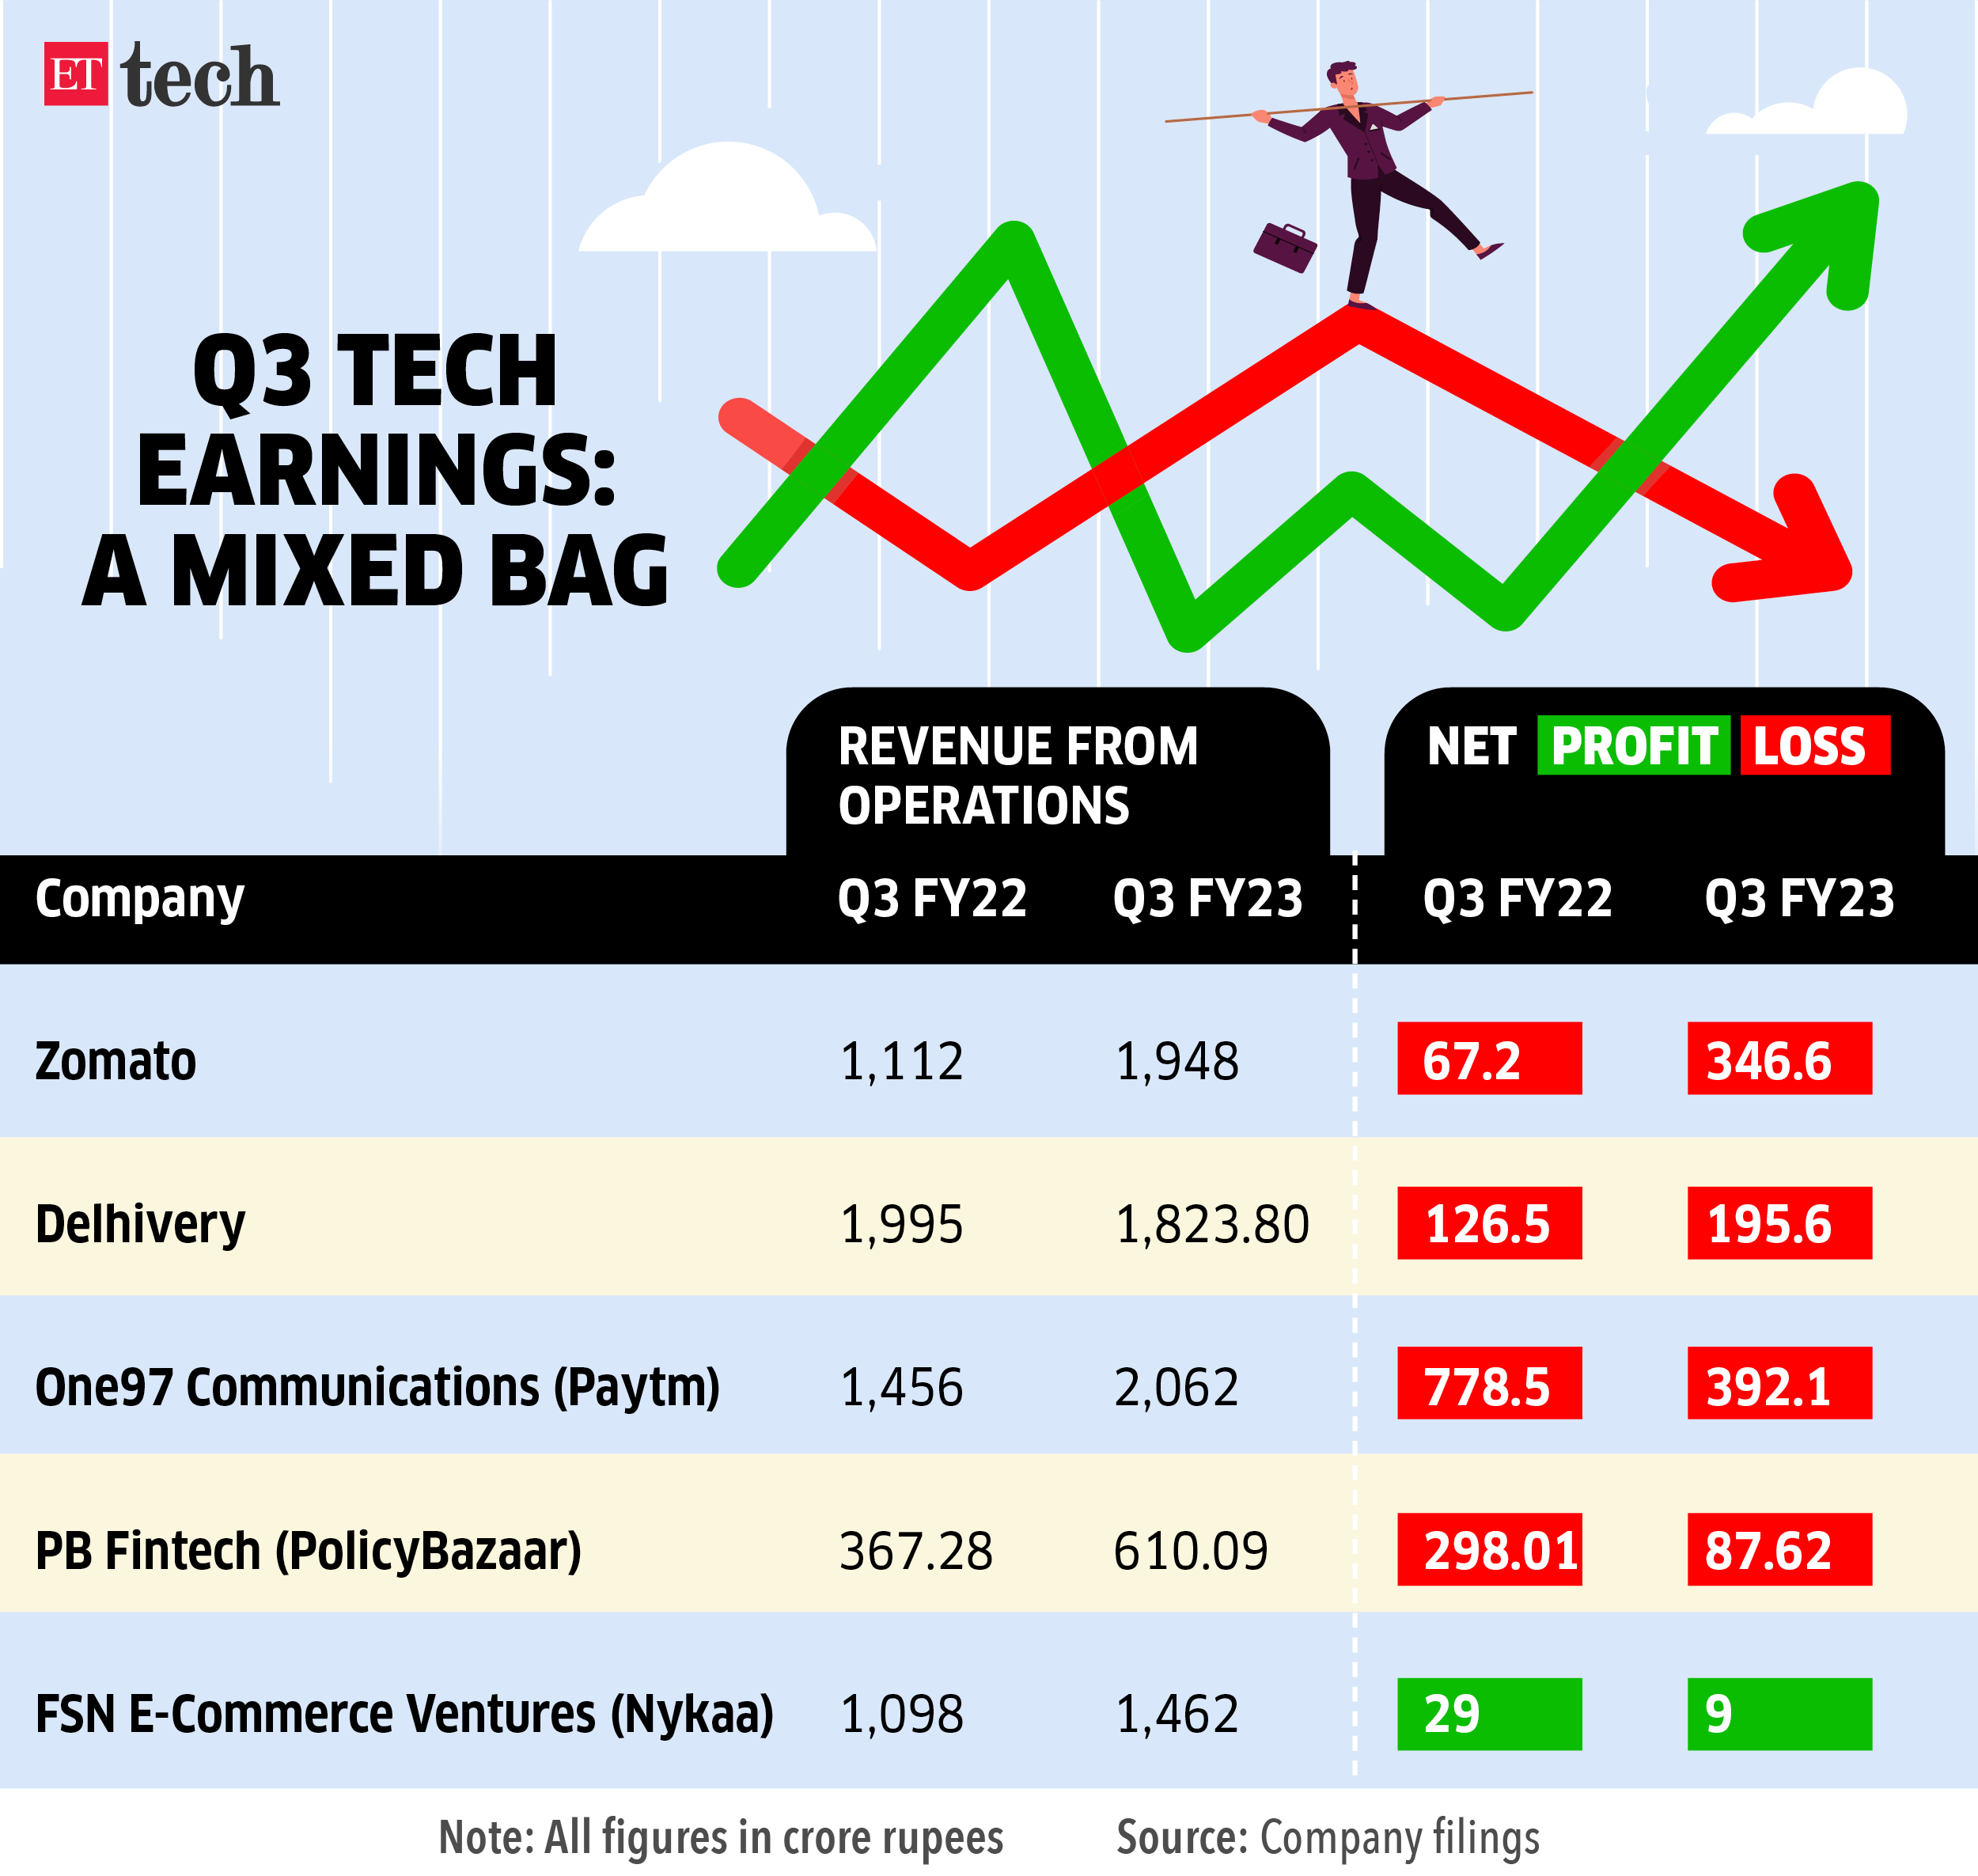 Q3 Tech earnings